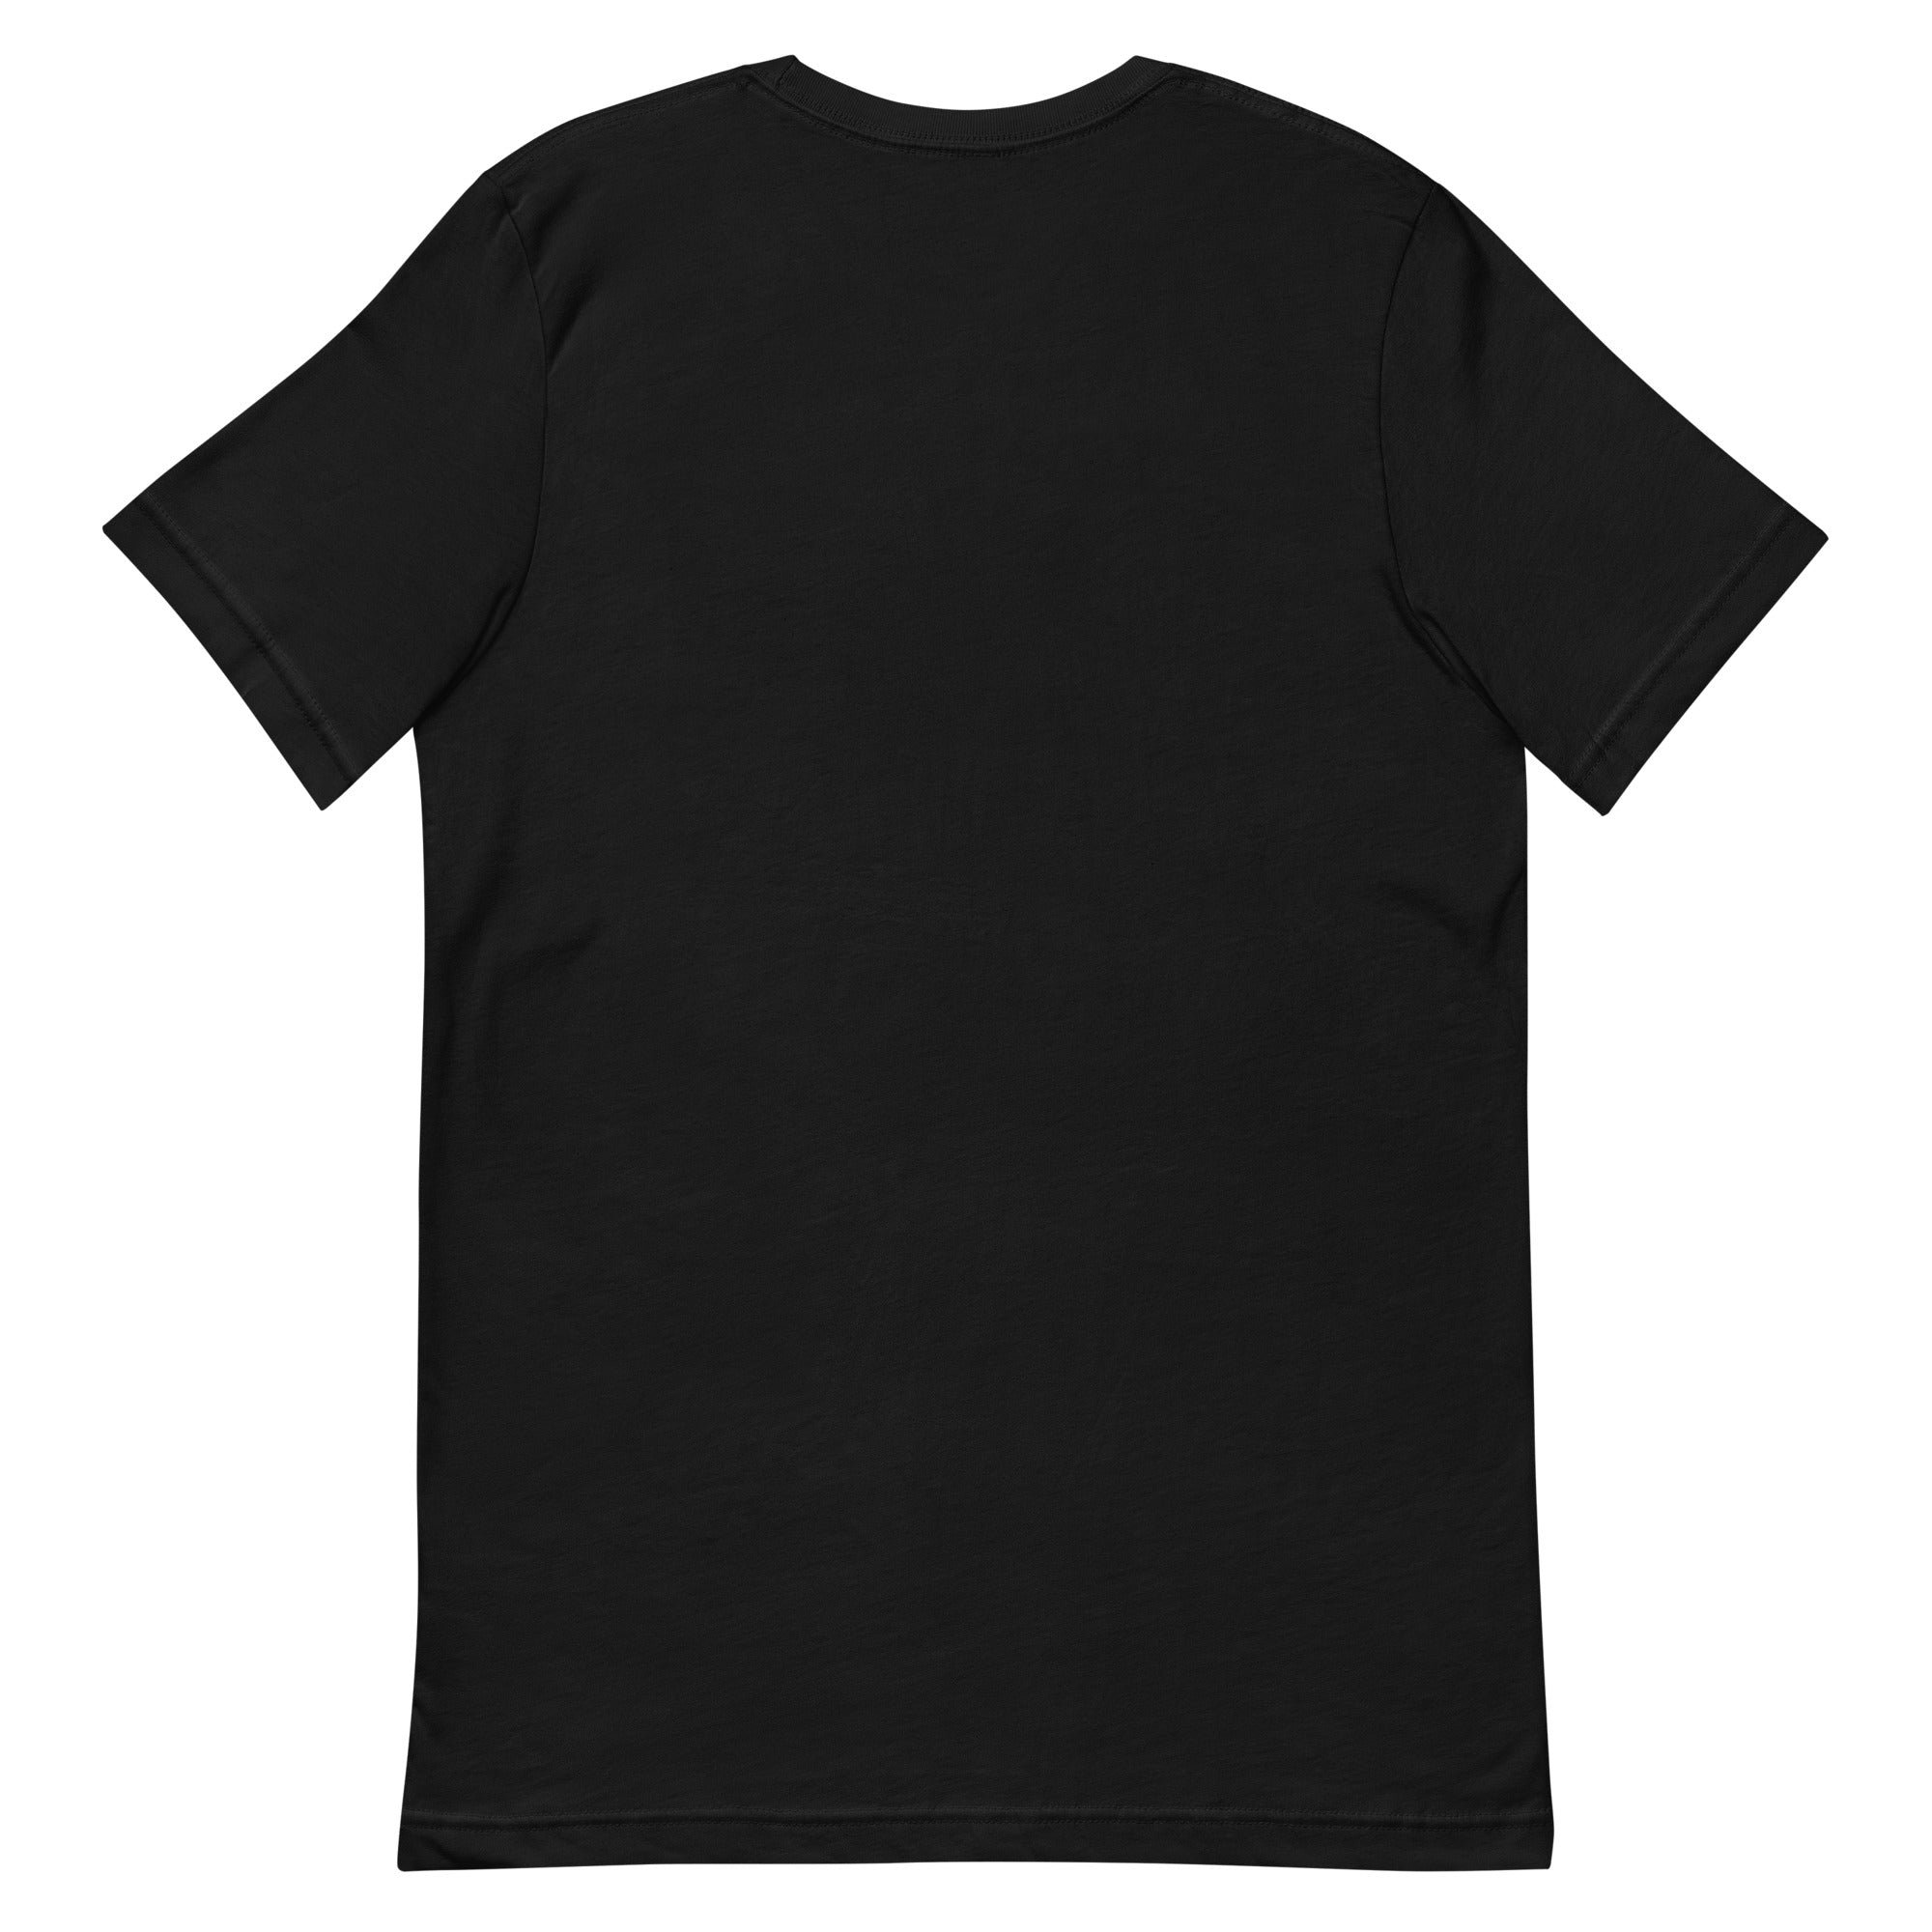 Monster High Pride Black T-Shirt (Jeremy Holder)